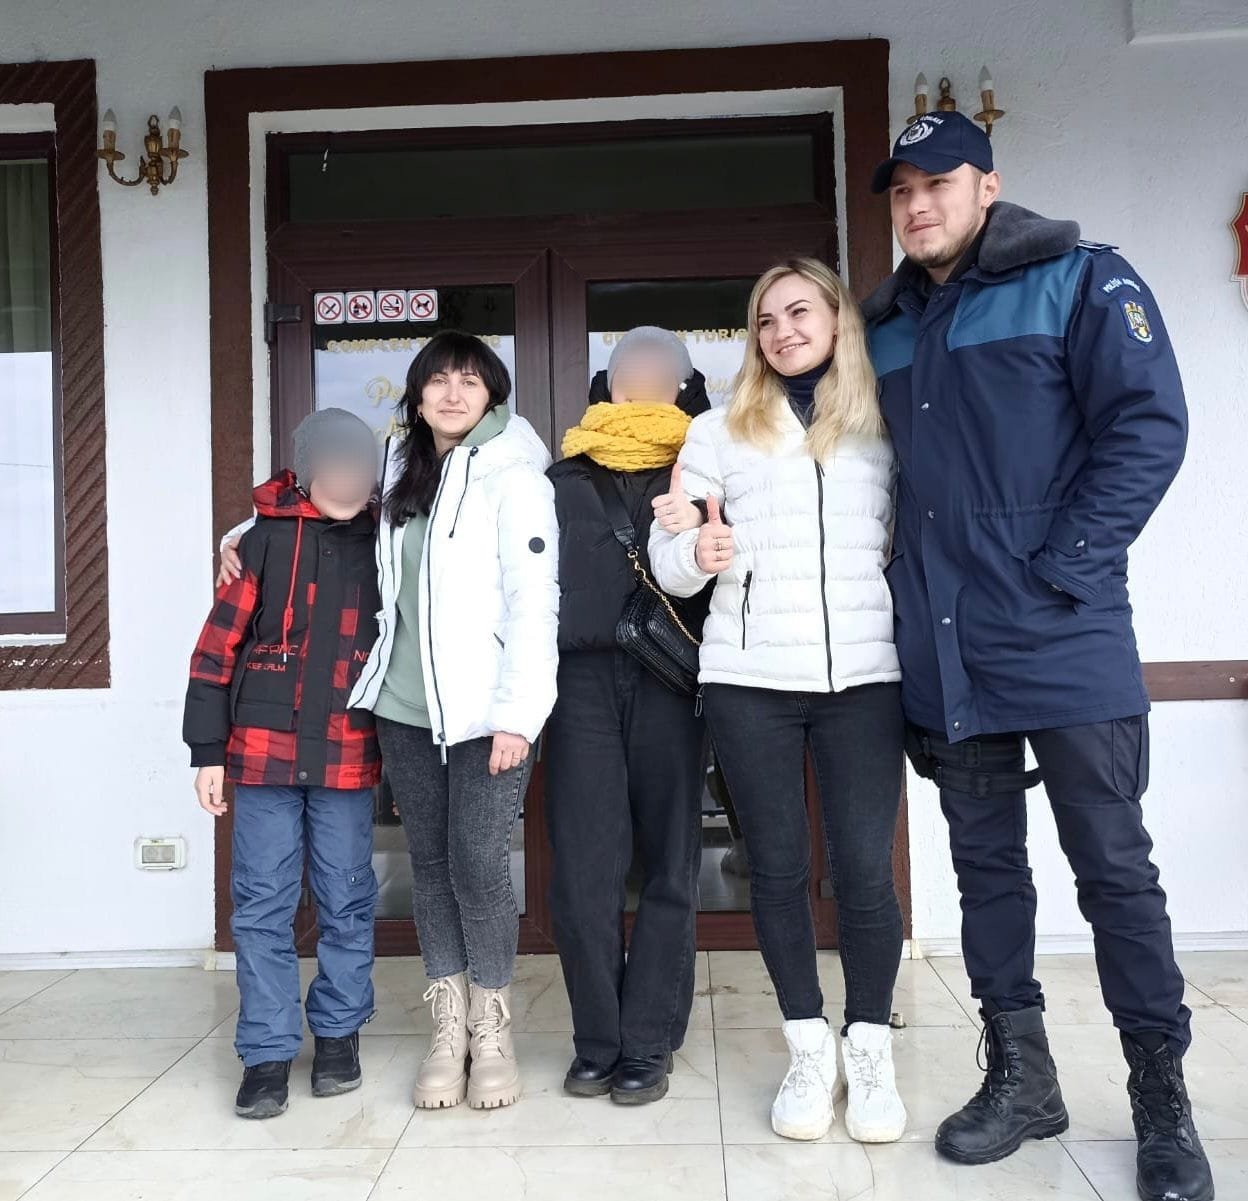  Polițiștii ieșeni au salvat o familie de ucraineni în drum spre Suedia